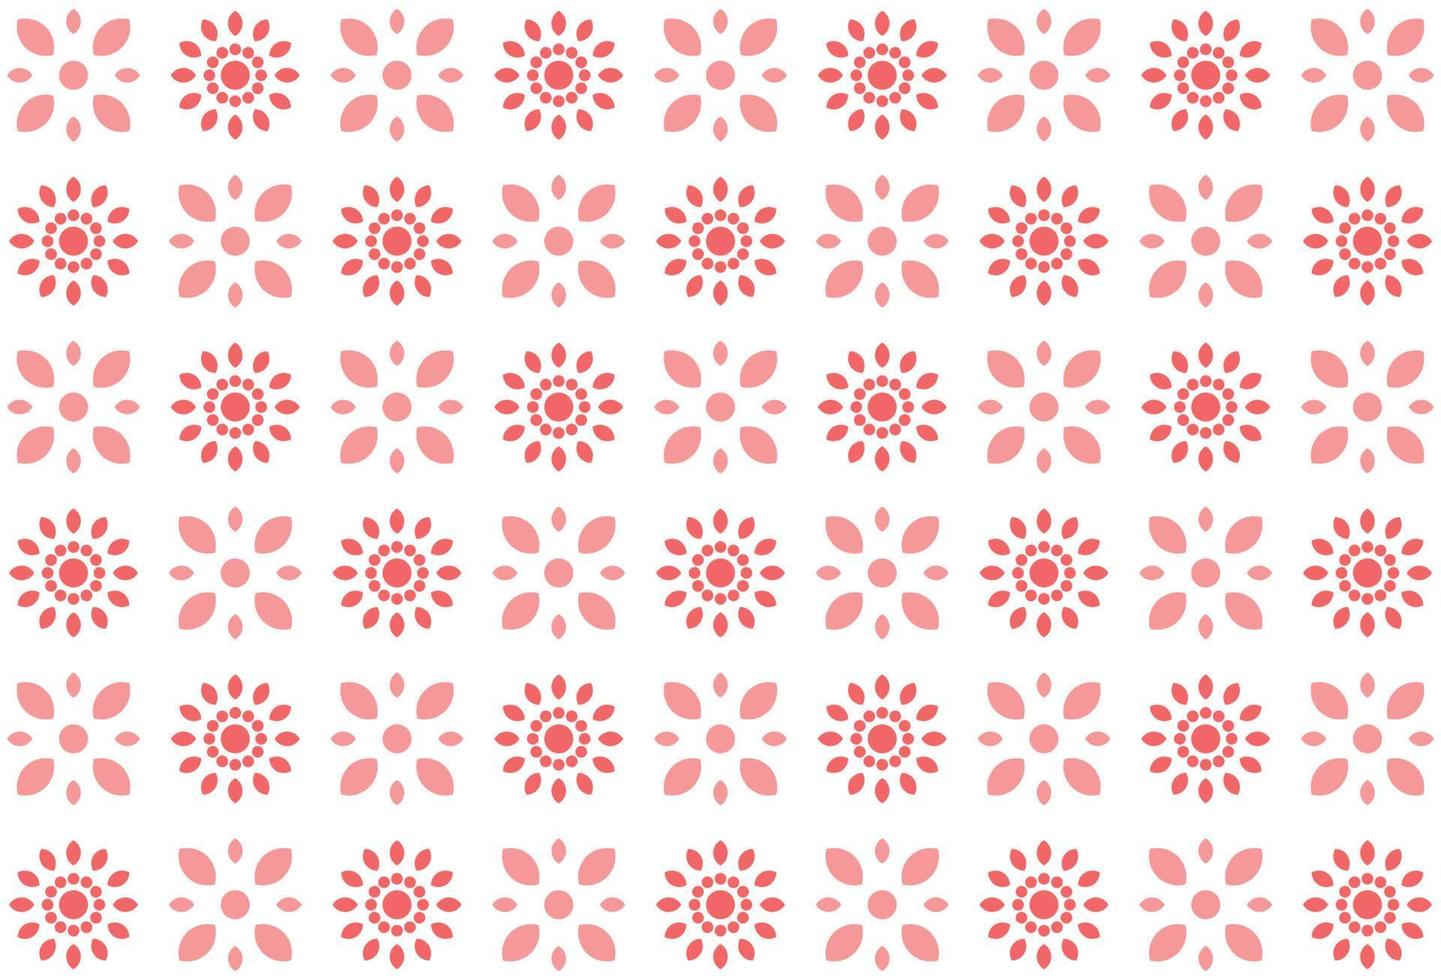 padrão sem emenda de flor rosa abstrata vetor